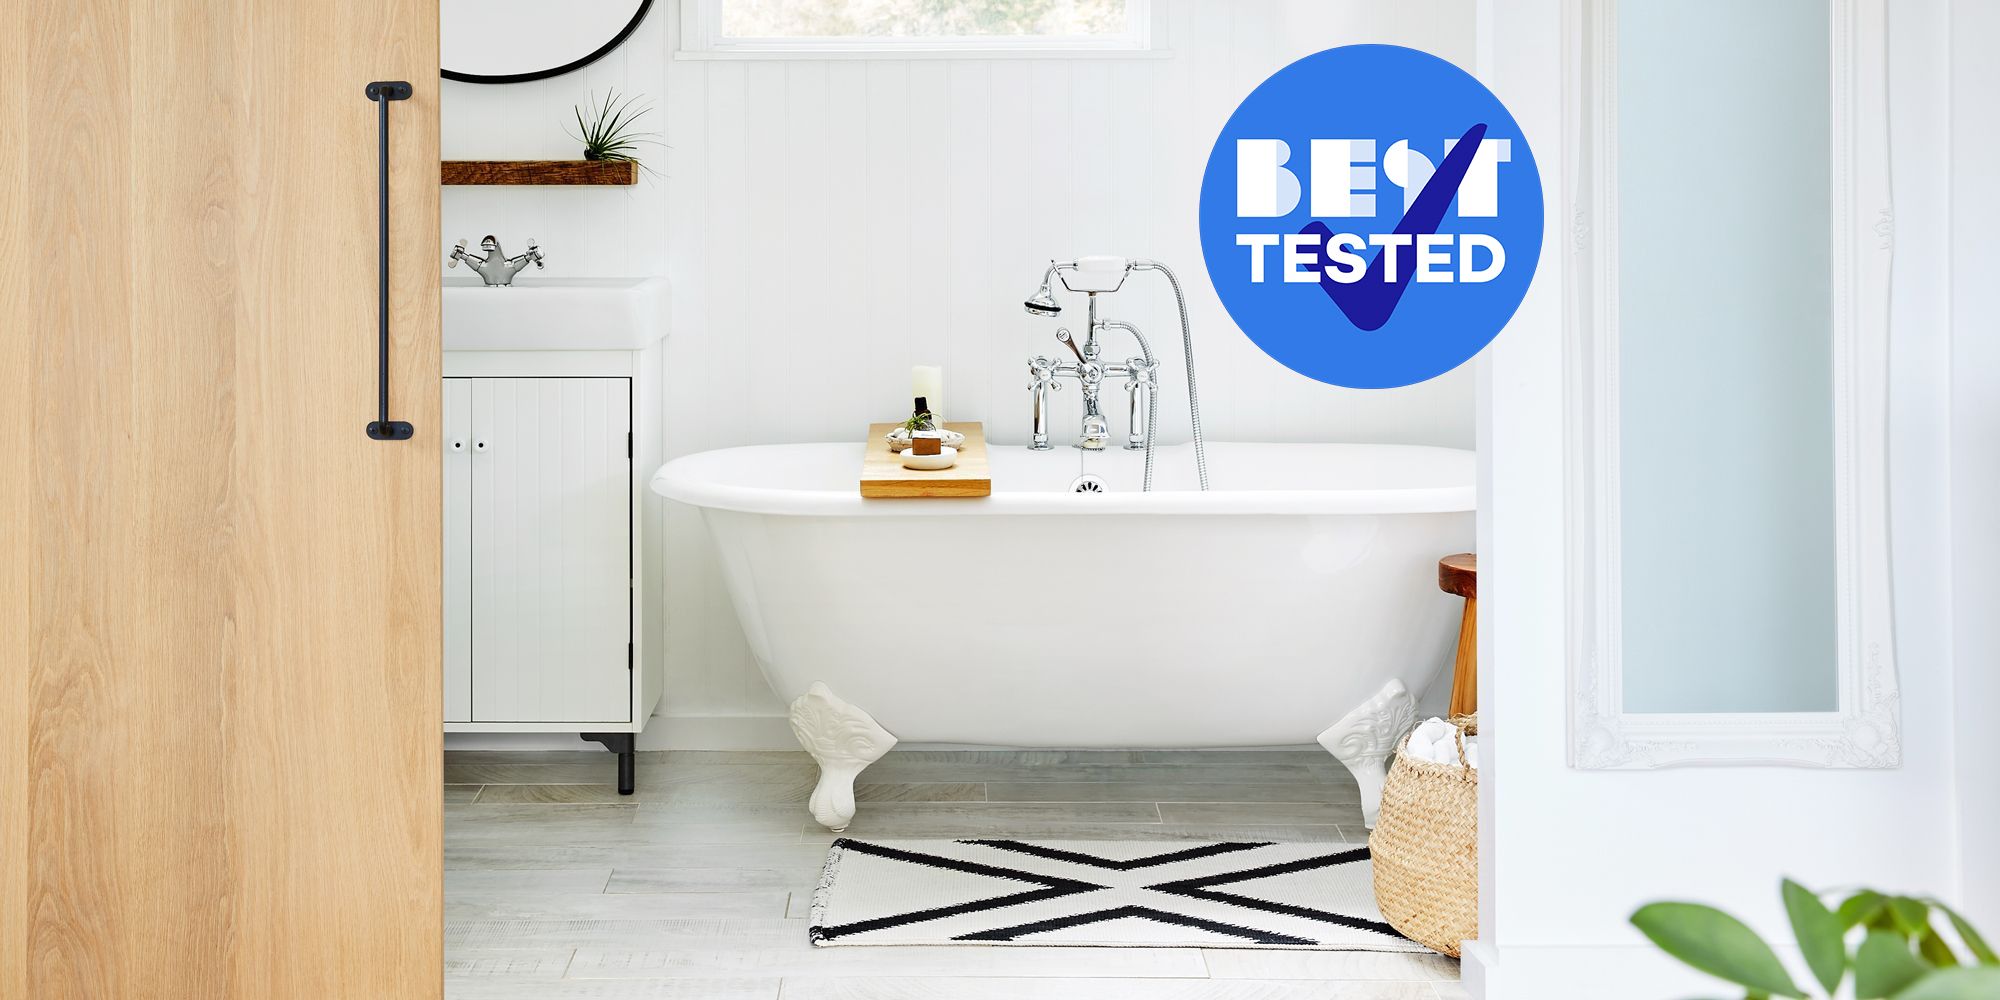 https://hips.hearstapps.com/hmg-prod/images/best-bathtub-cleaners-1628265065.jpg